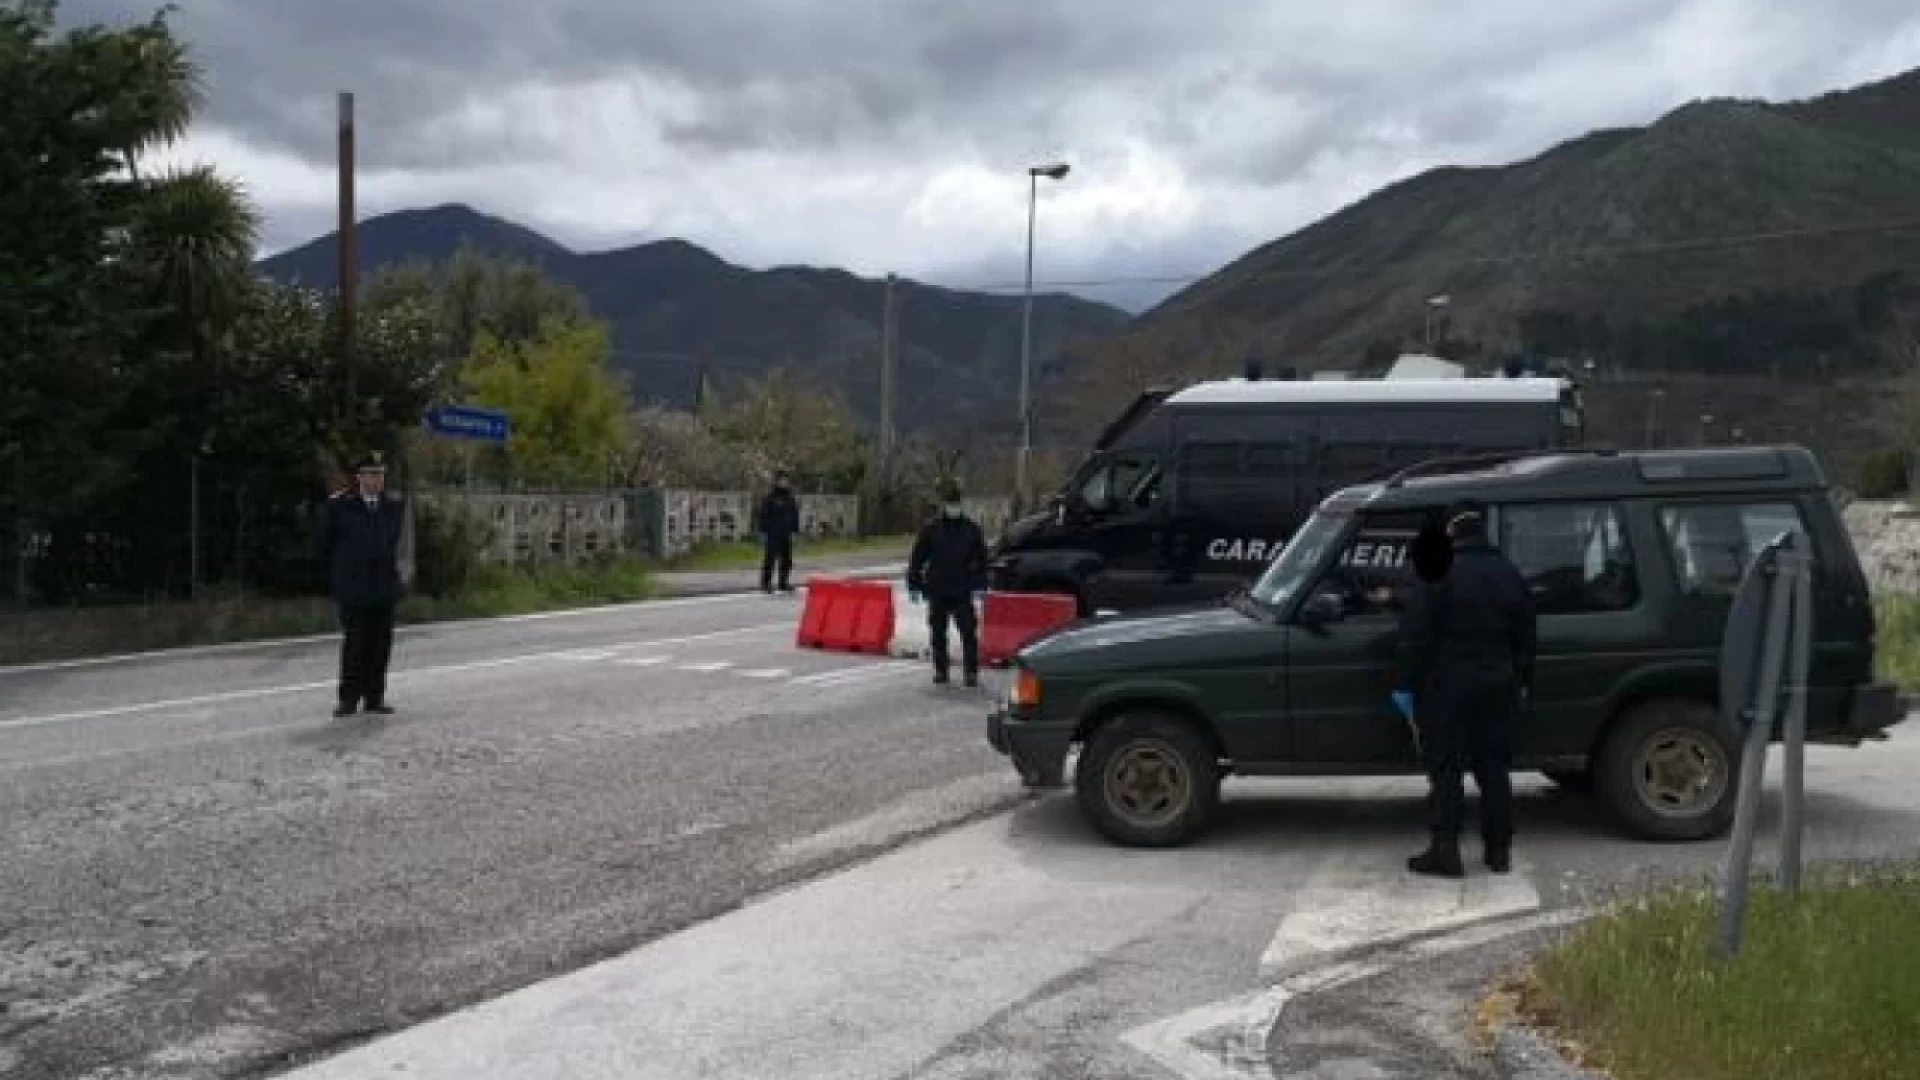 Colli a Volturno: morte Paolo Marchesani. Indagini ad una svolta. A Venafro i Carabinieri sequestrano due moto e un’auto.